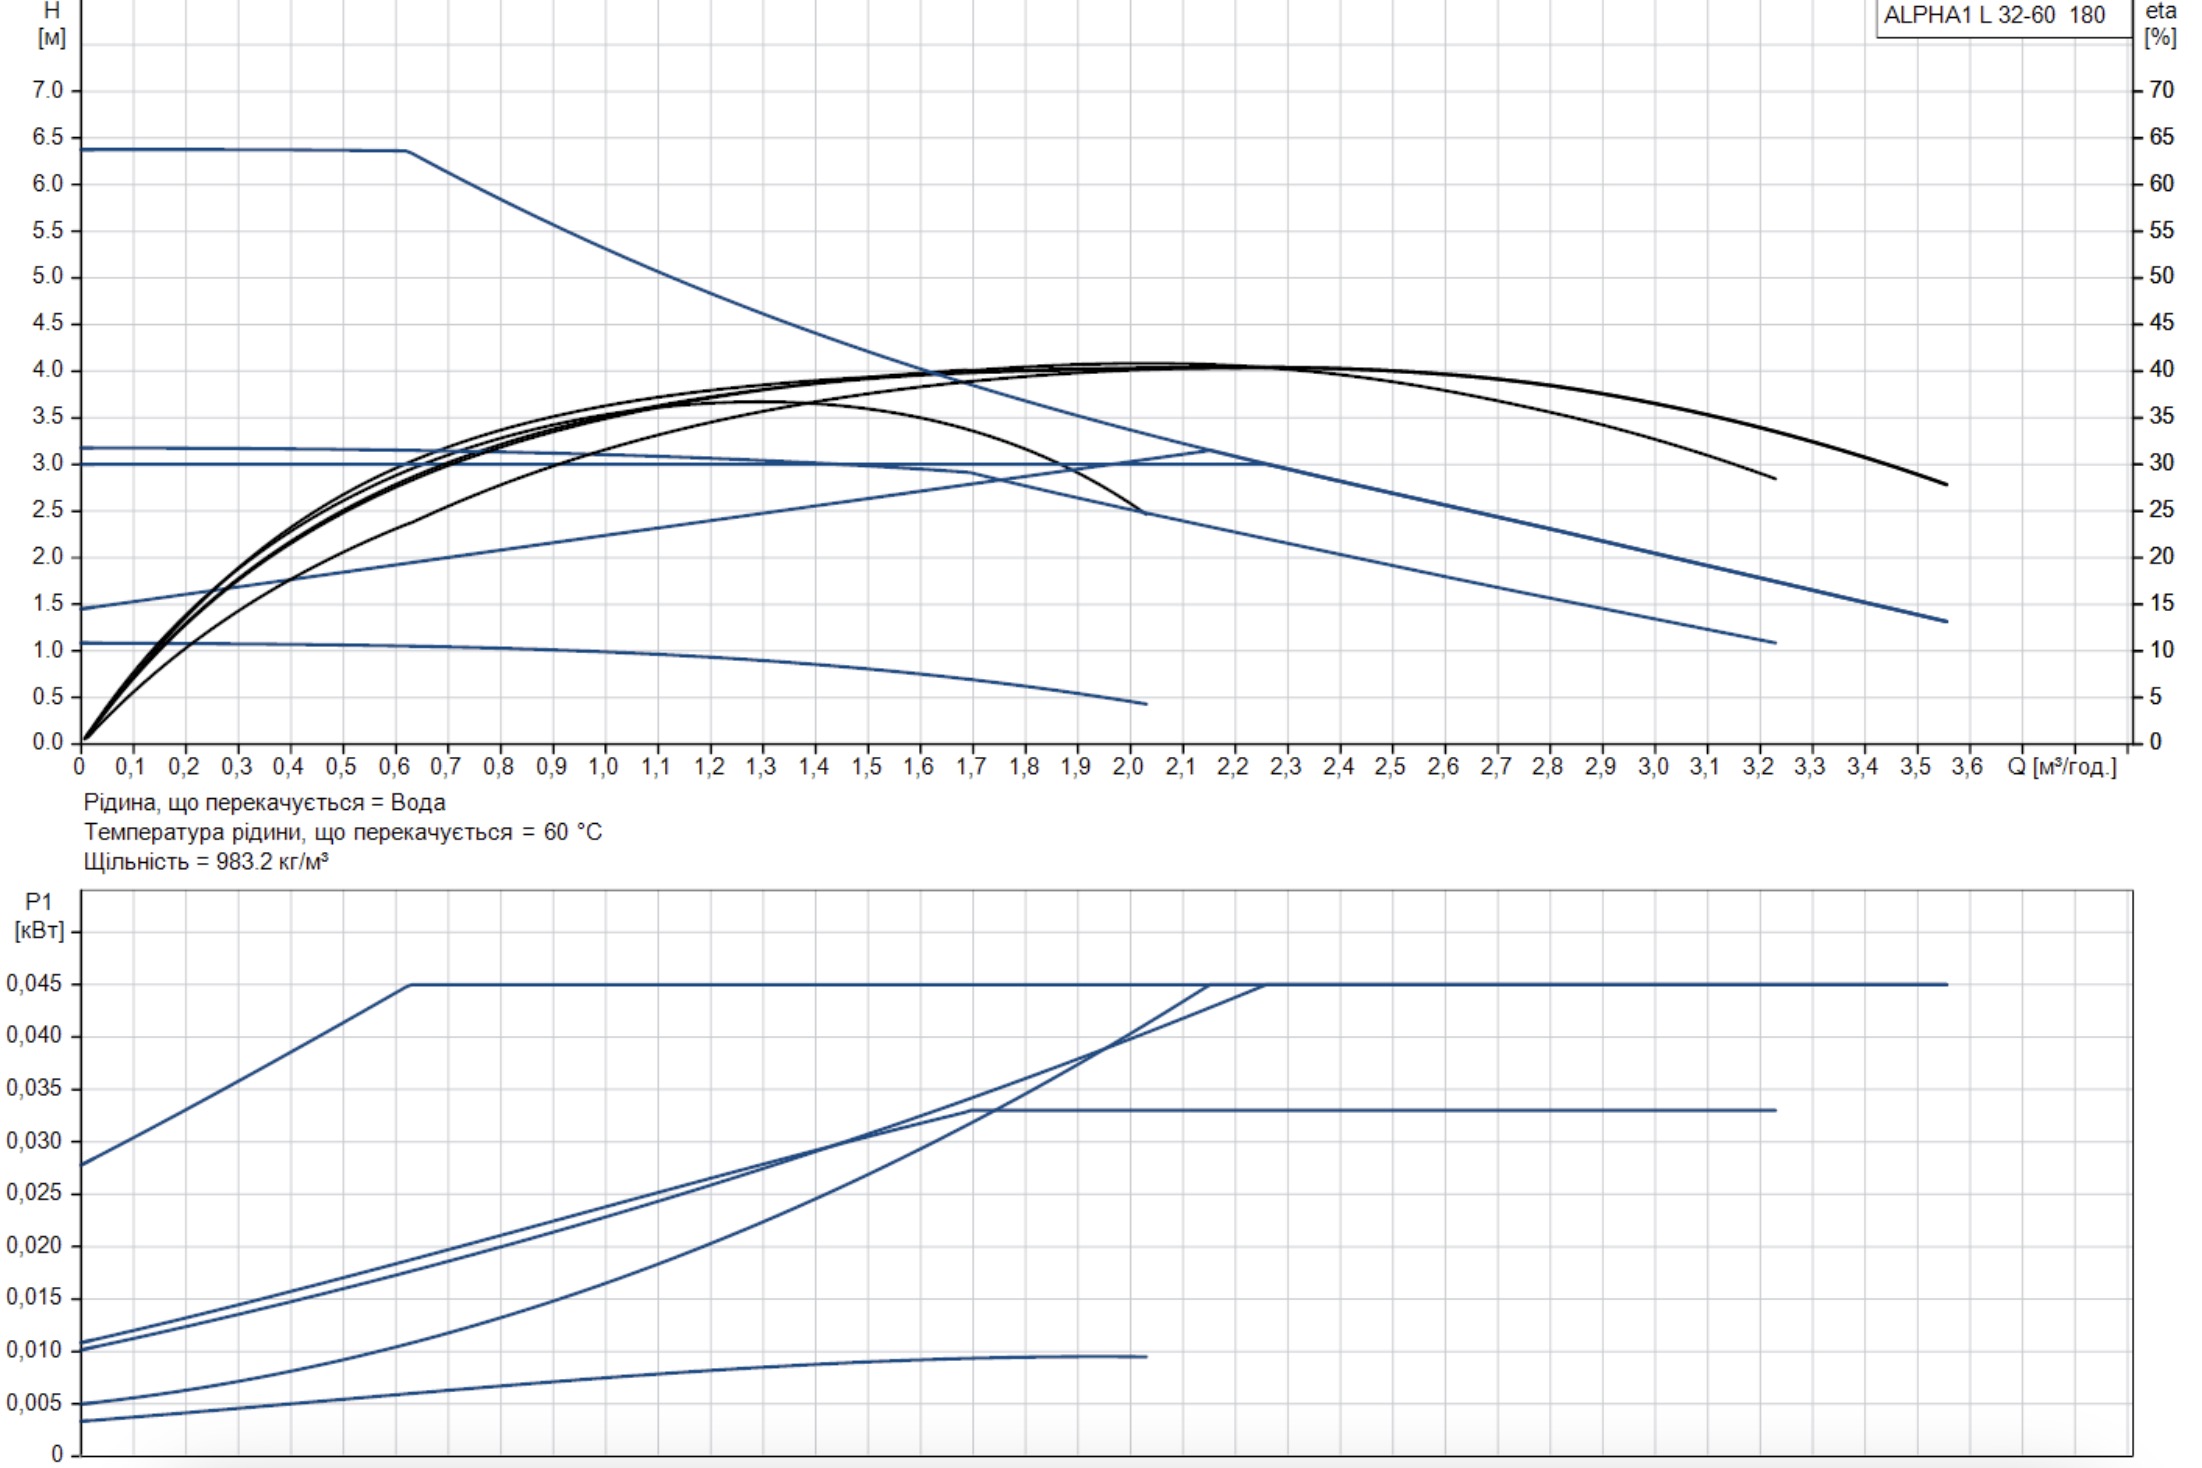 Grundfos Alpha1 L 32-60 180 (99160590) Діаграма продуктивності